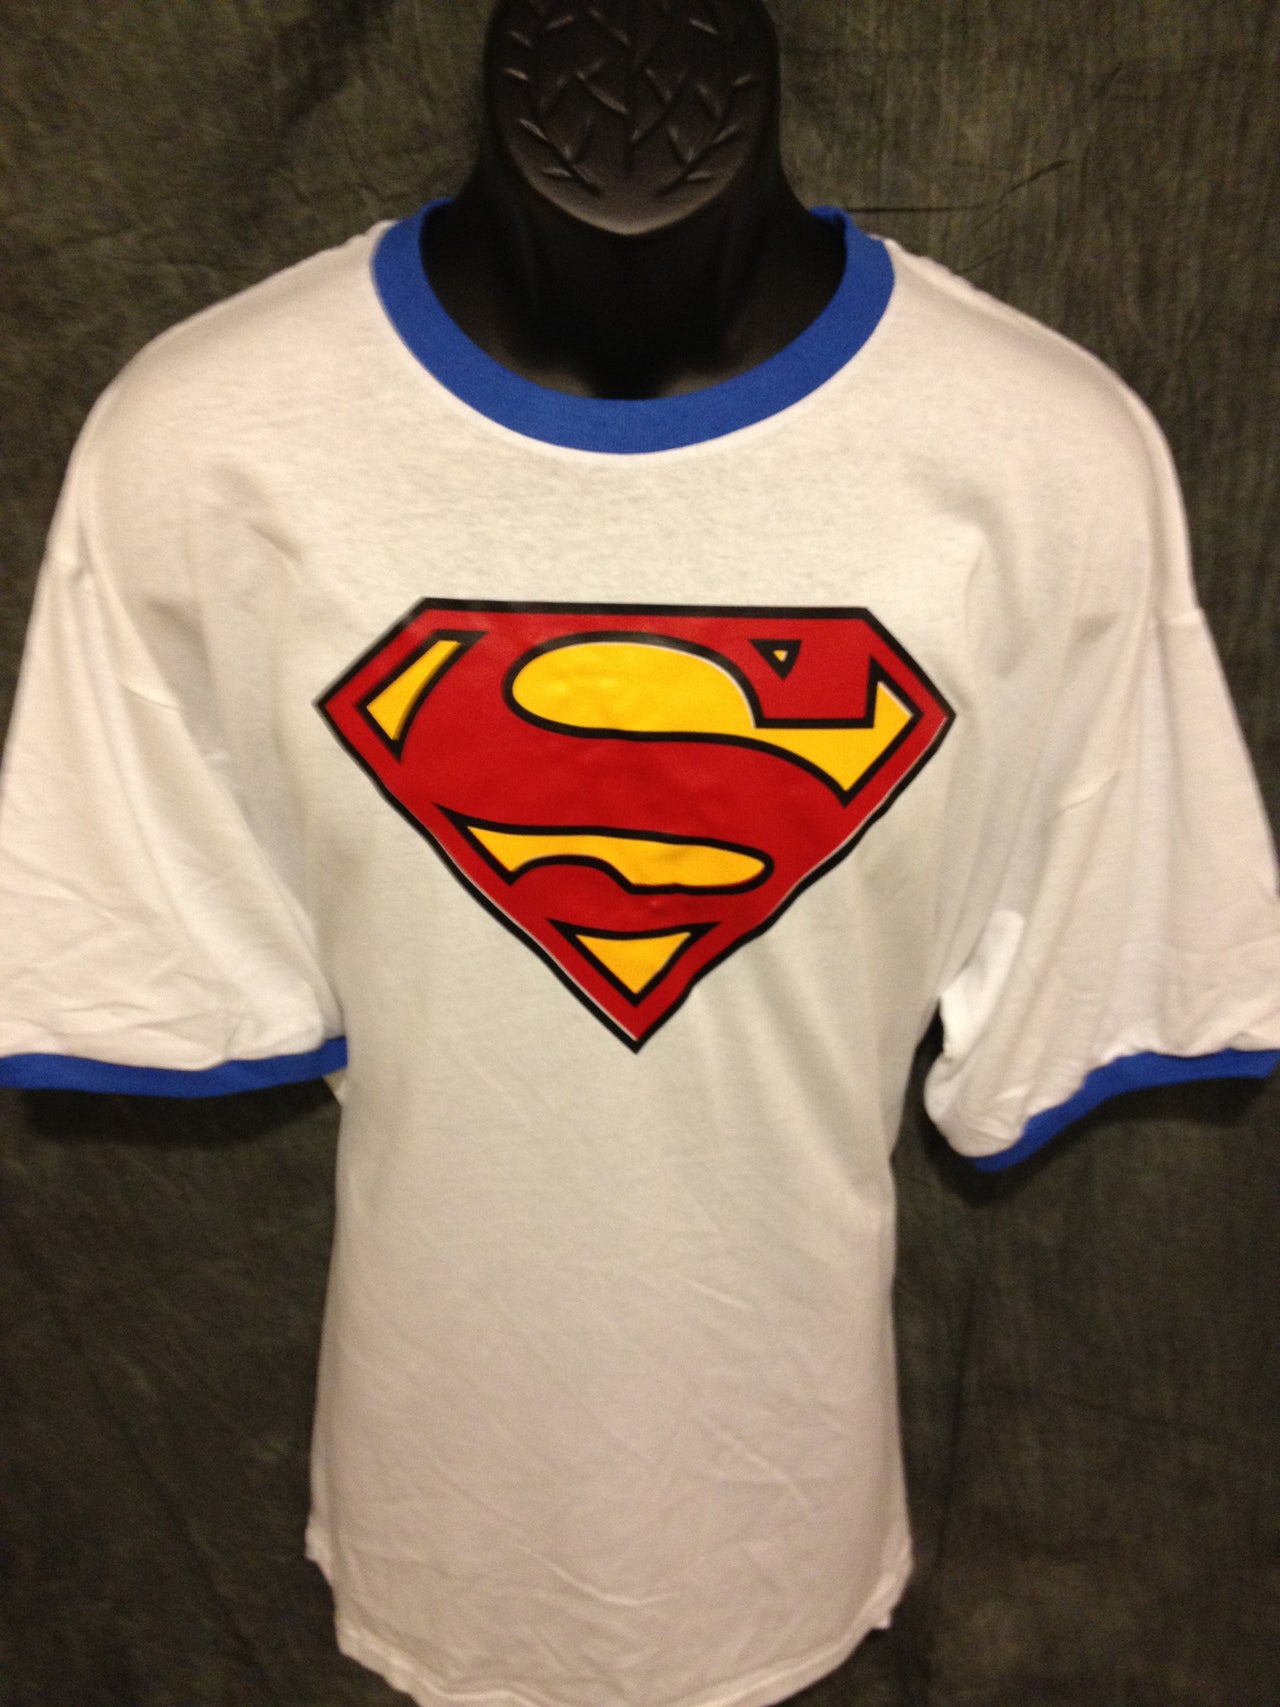 Superman Classic Logo on Blue Ringer Tshirt - TshirtNow.net - 4